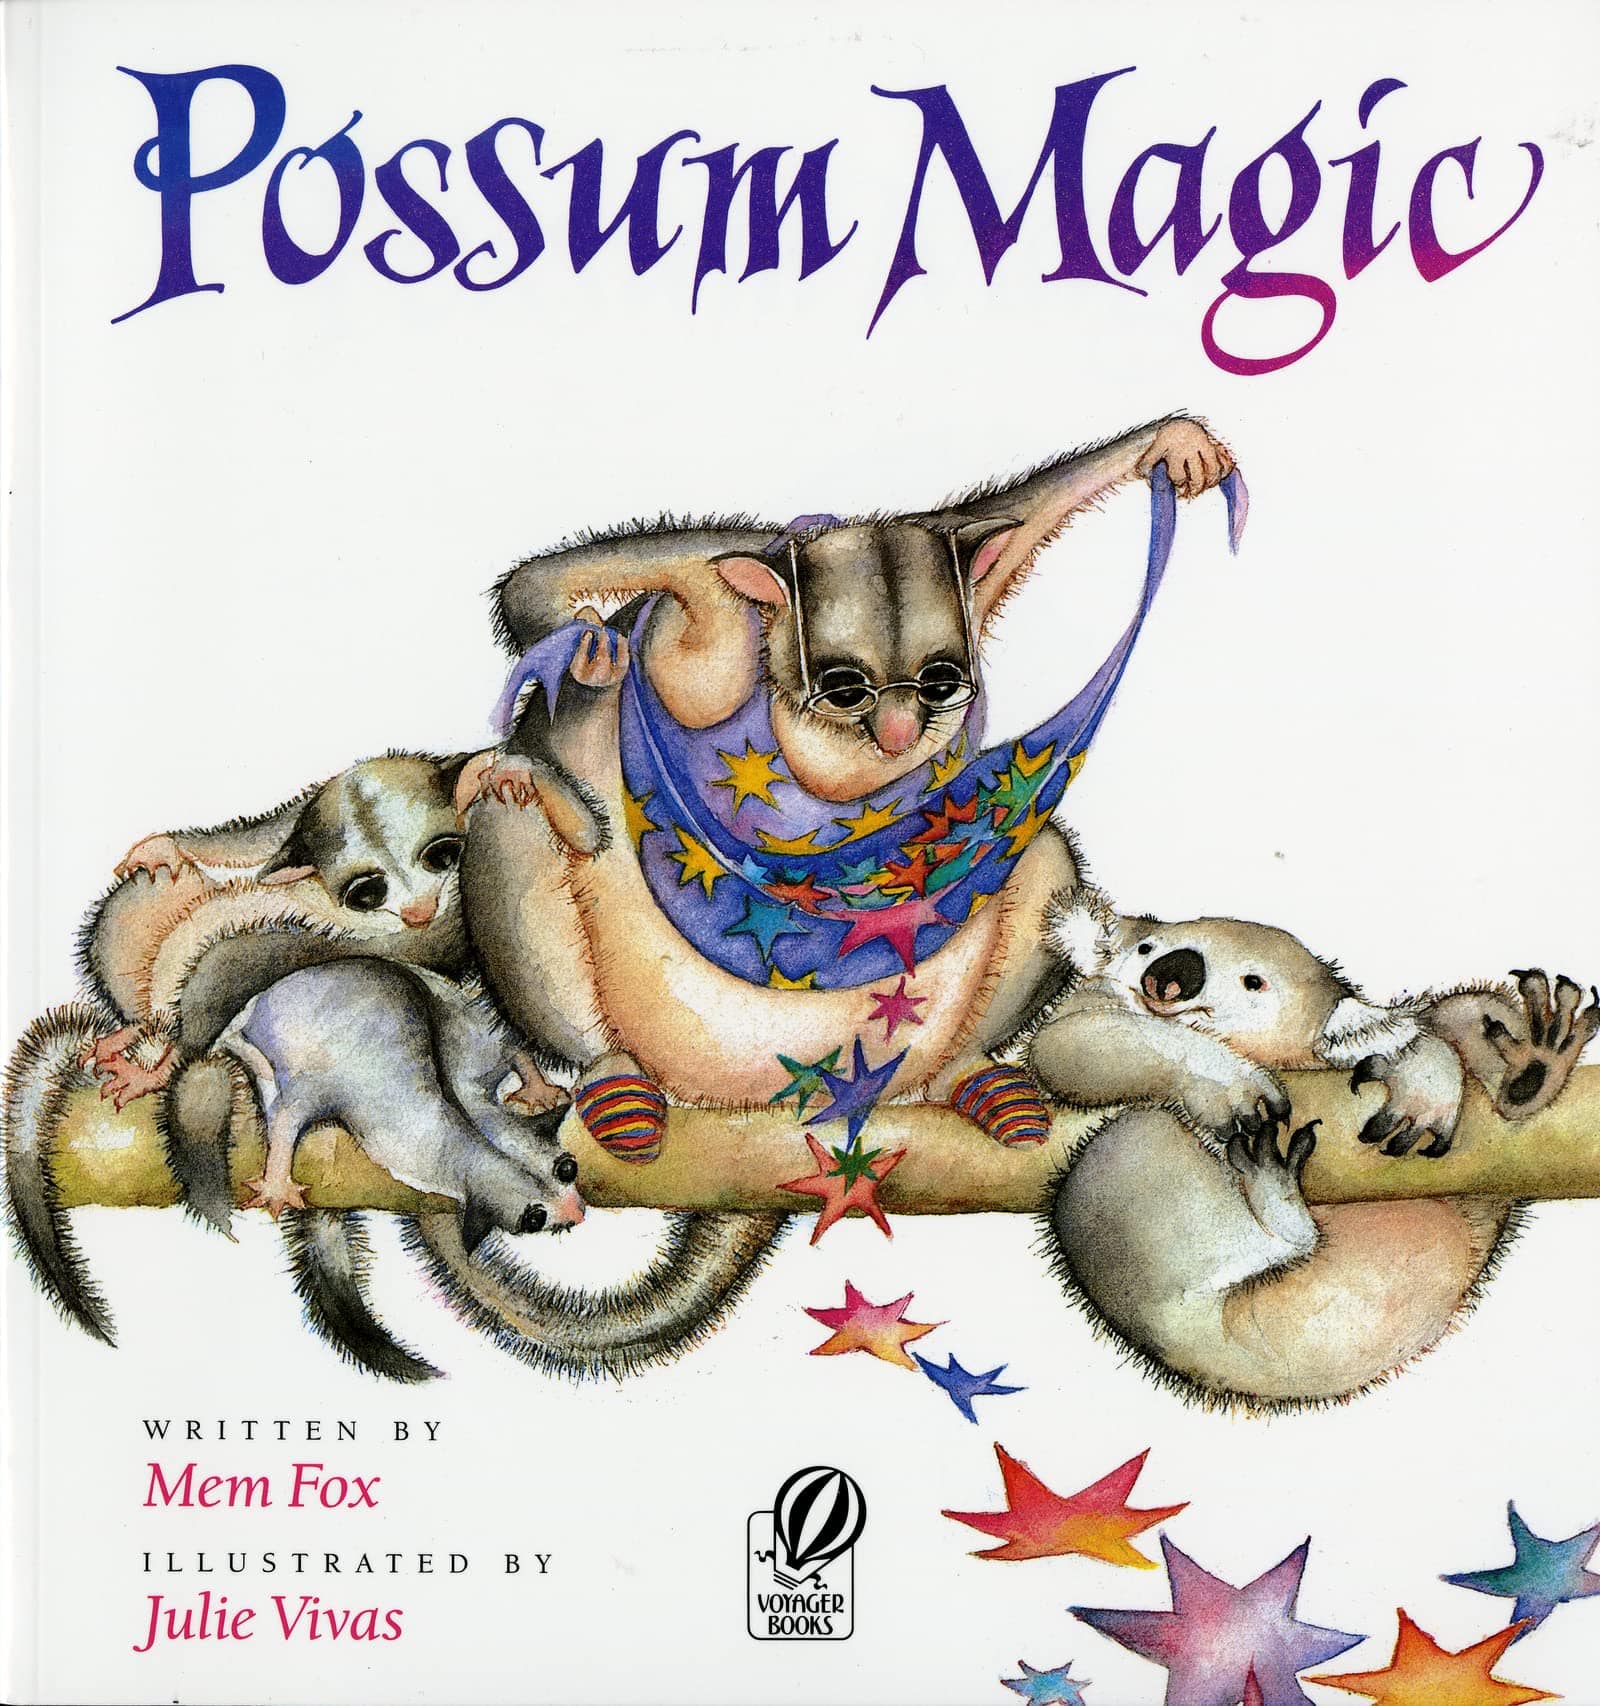 IMG : Possum Magic